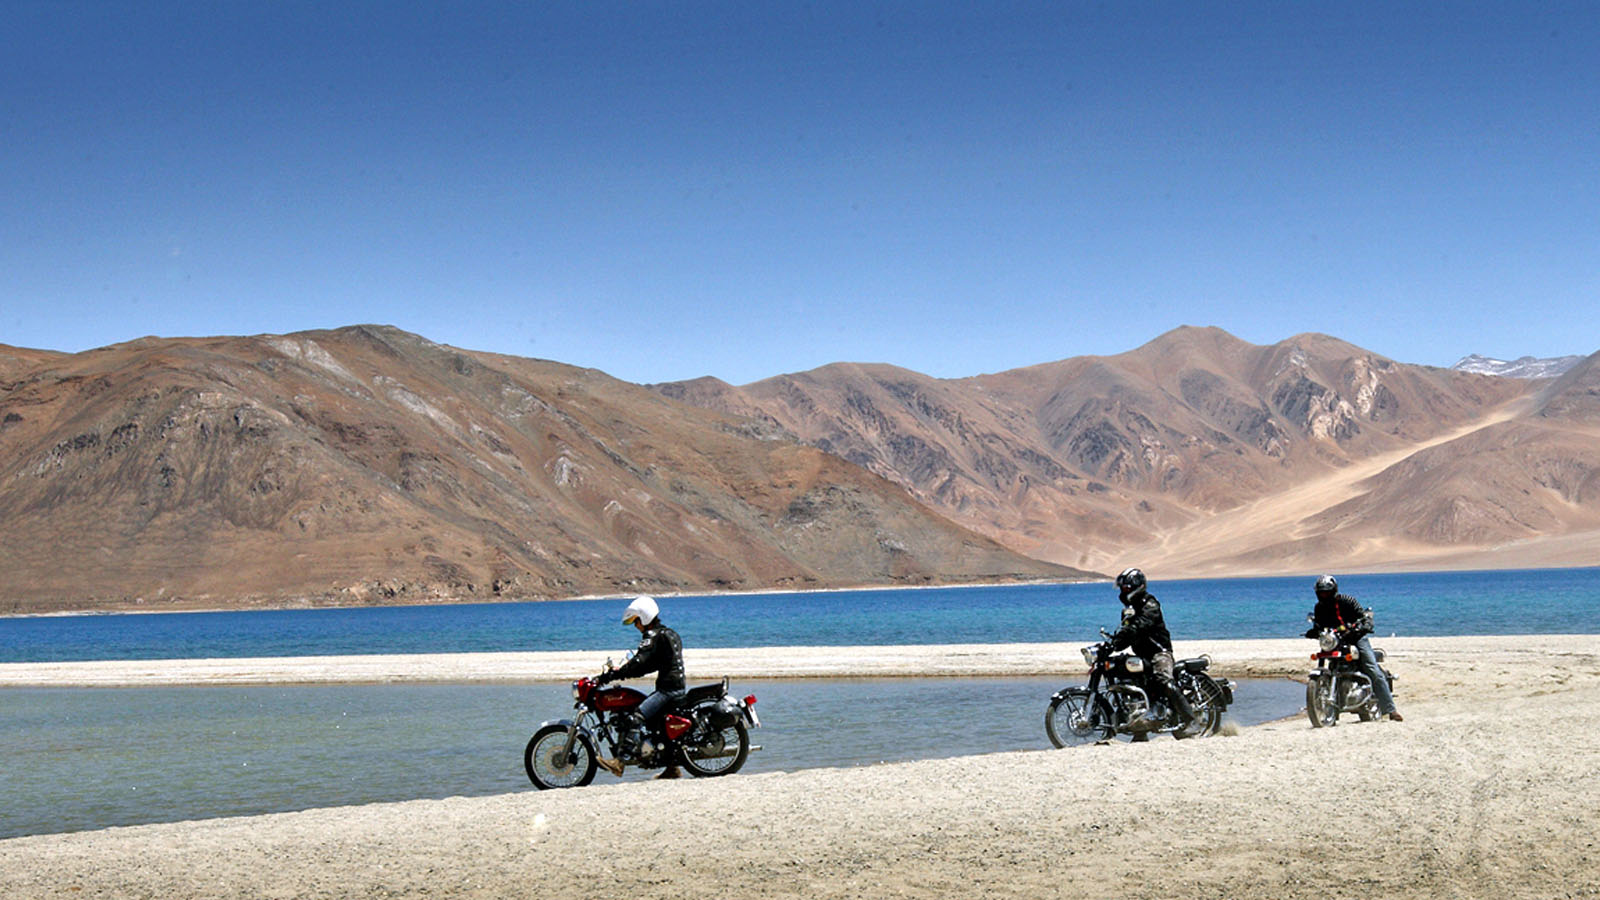 ladakh trip with bike